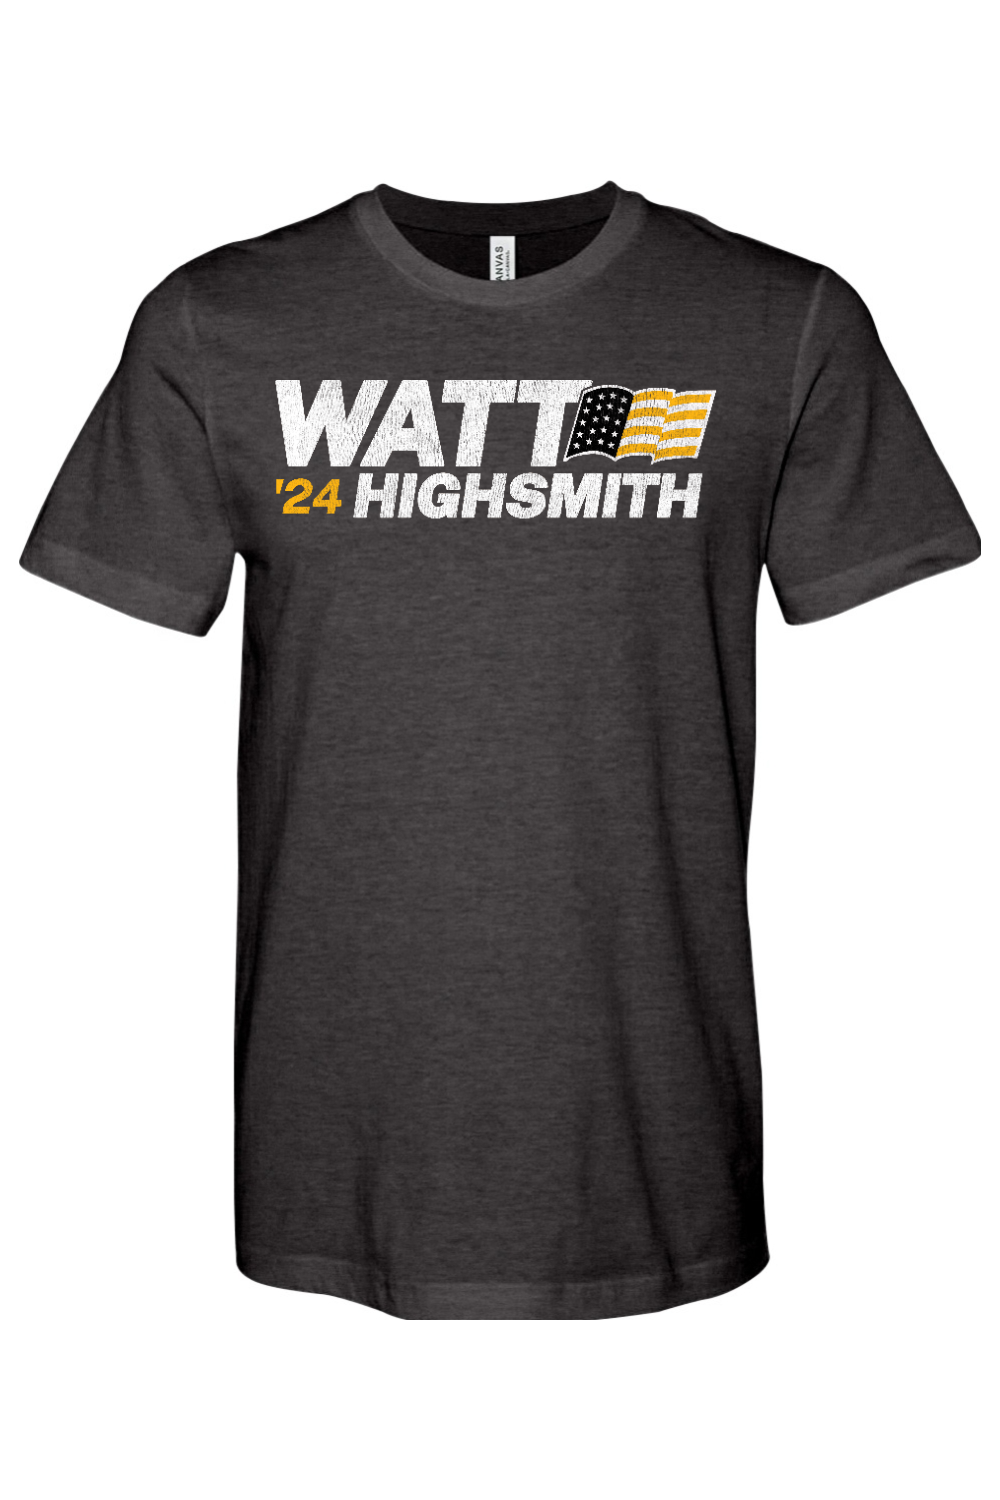 Watt Highsmith '24